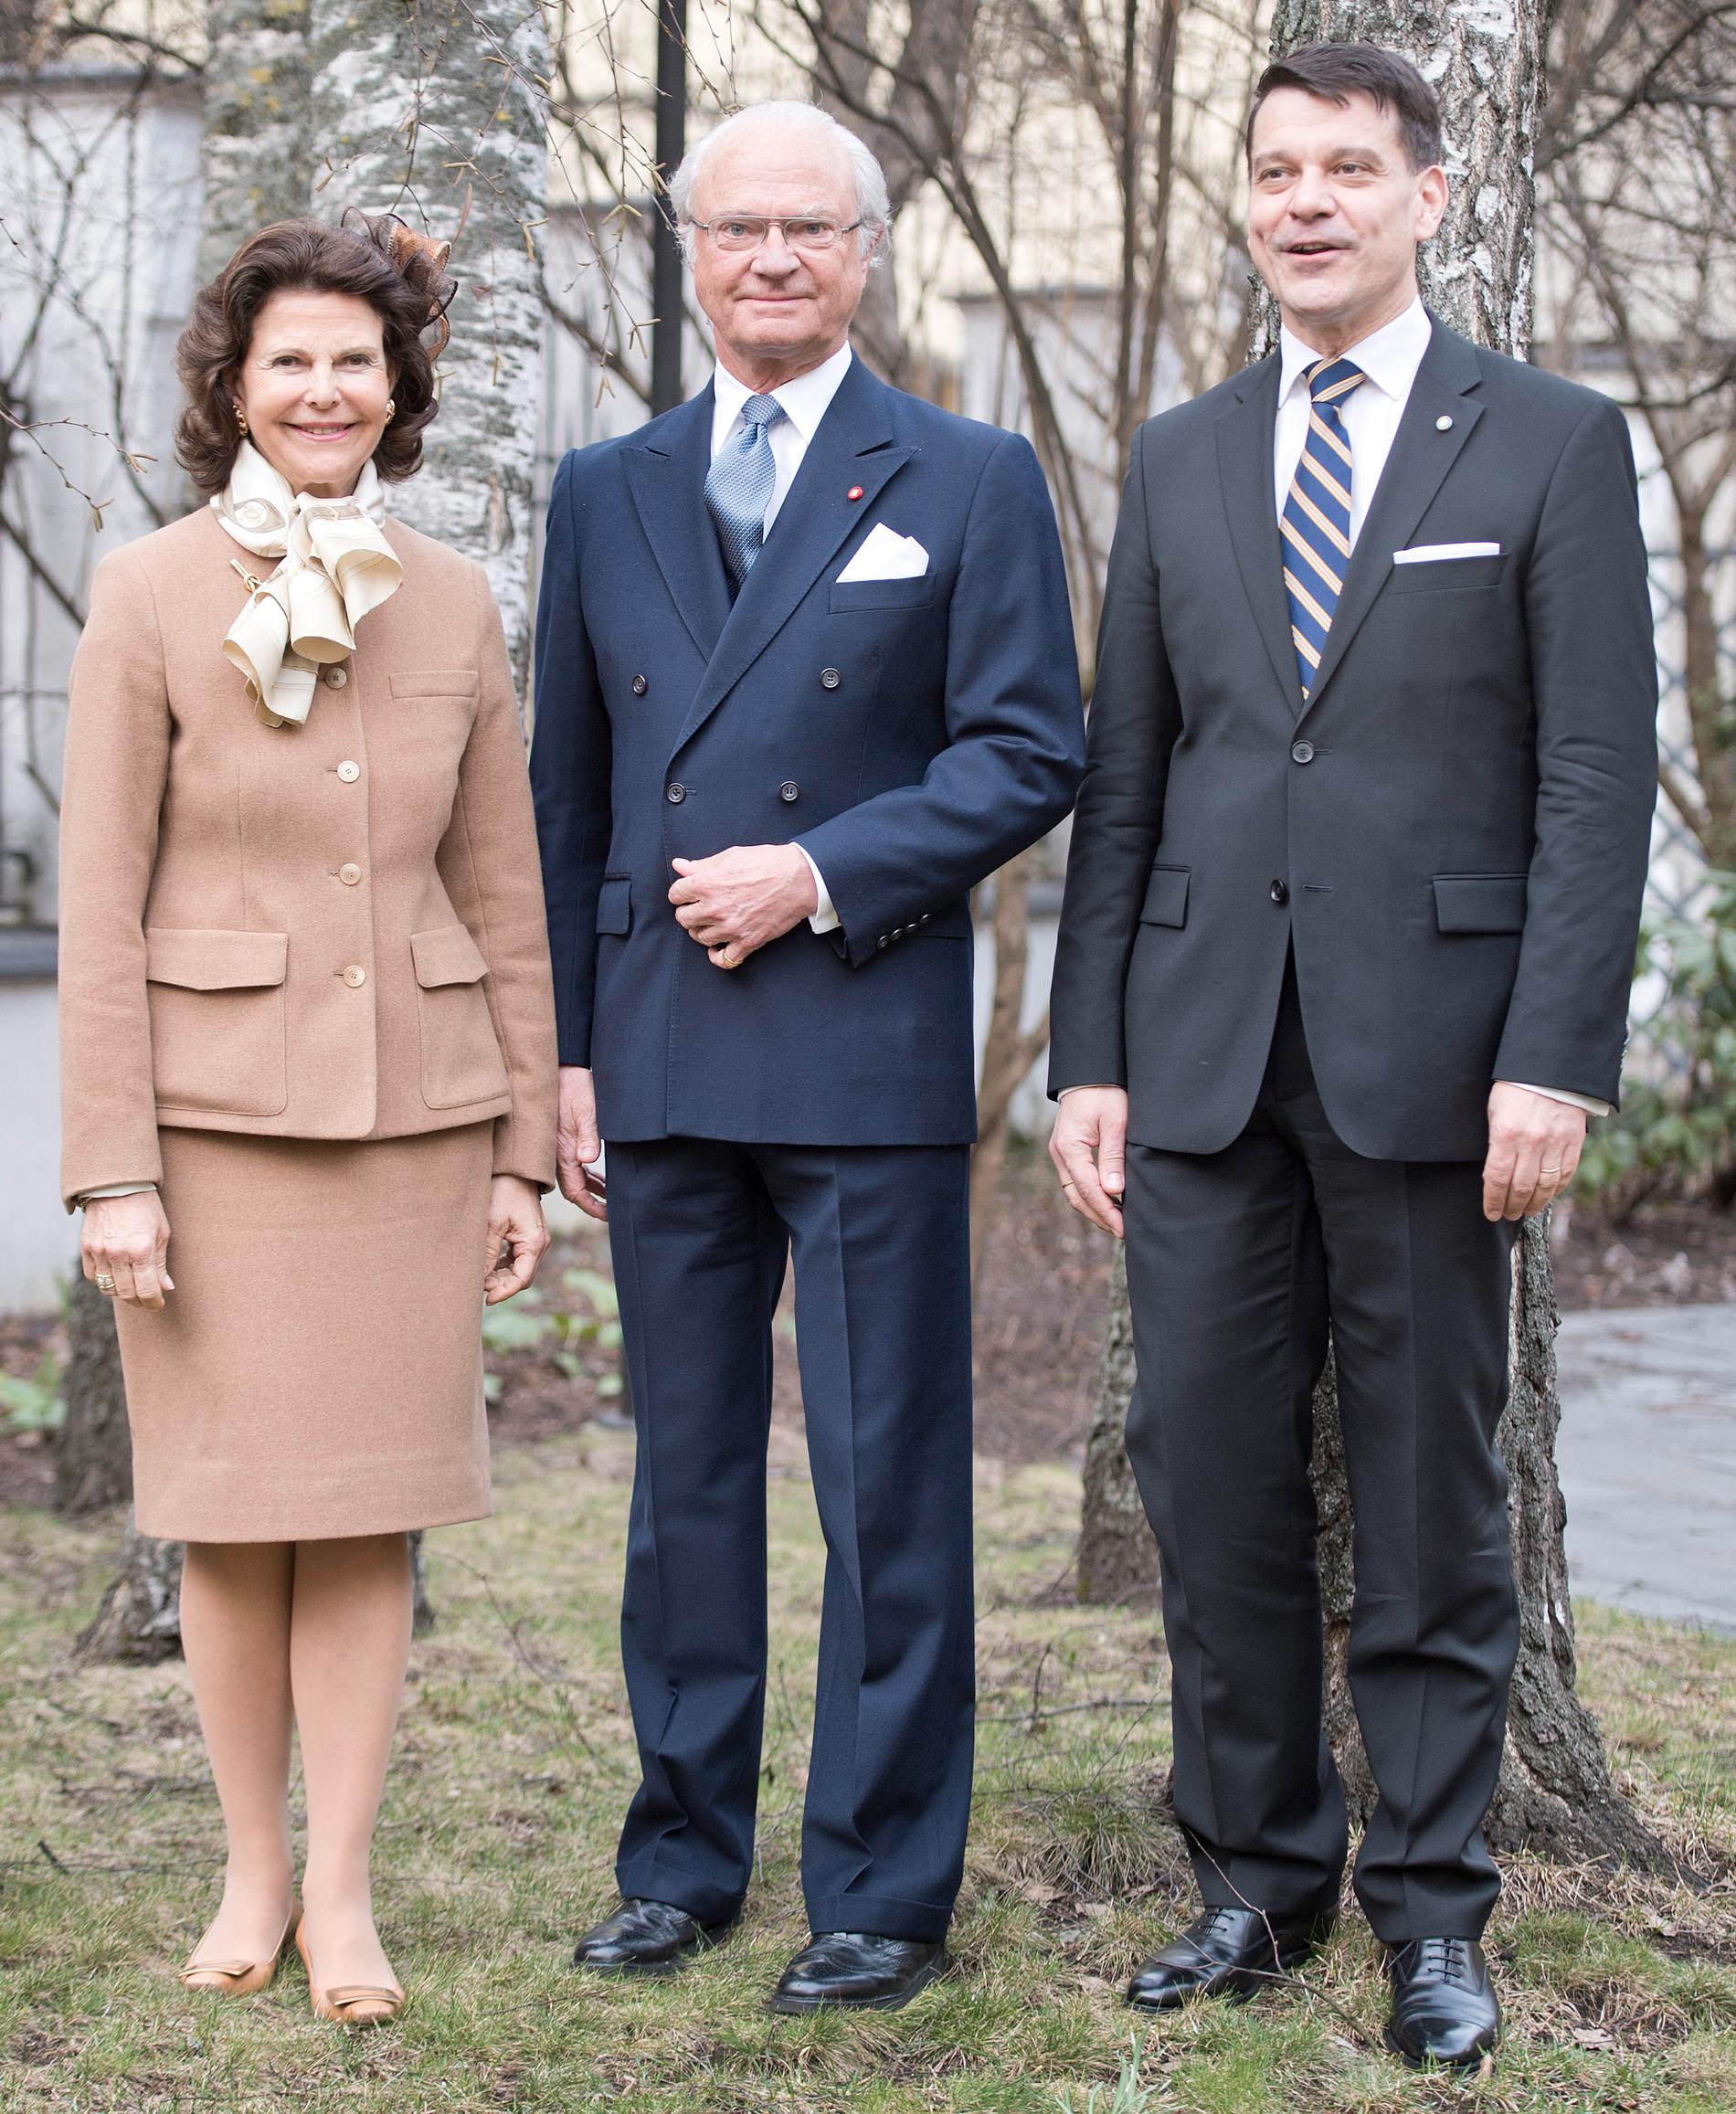 Henrik Landerholm, till höger i bilden, under tiden då han arbetade som diplomat. Här under ett statsbesök i Lettland tillsammans med kung Carl Gustaf och drottning Silvia 2014. 